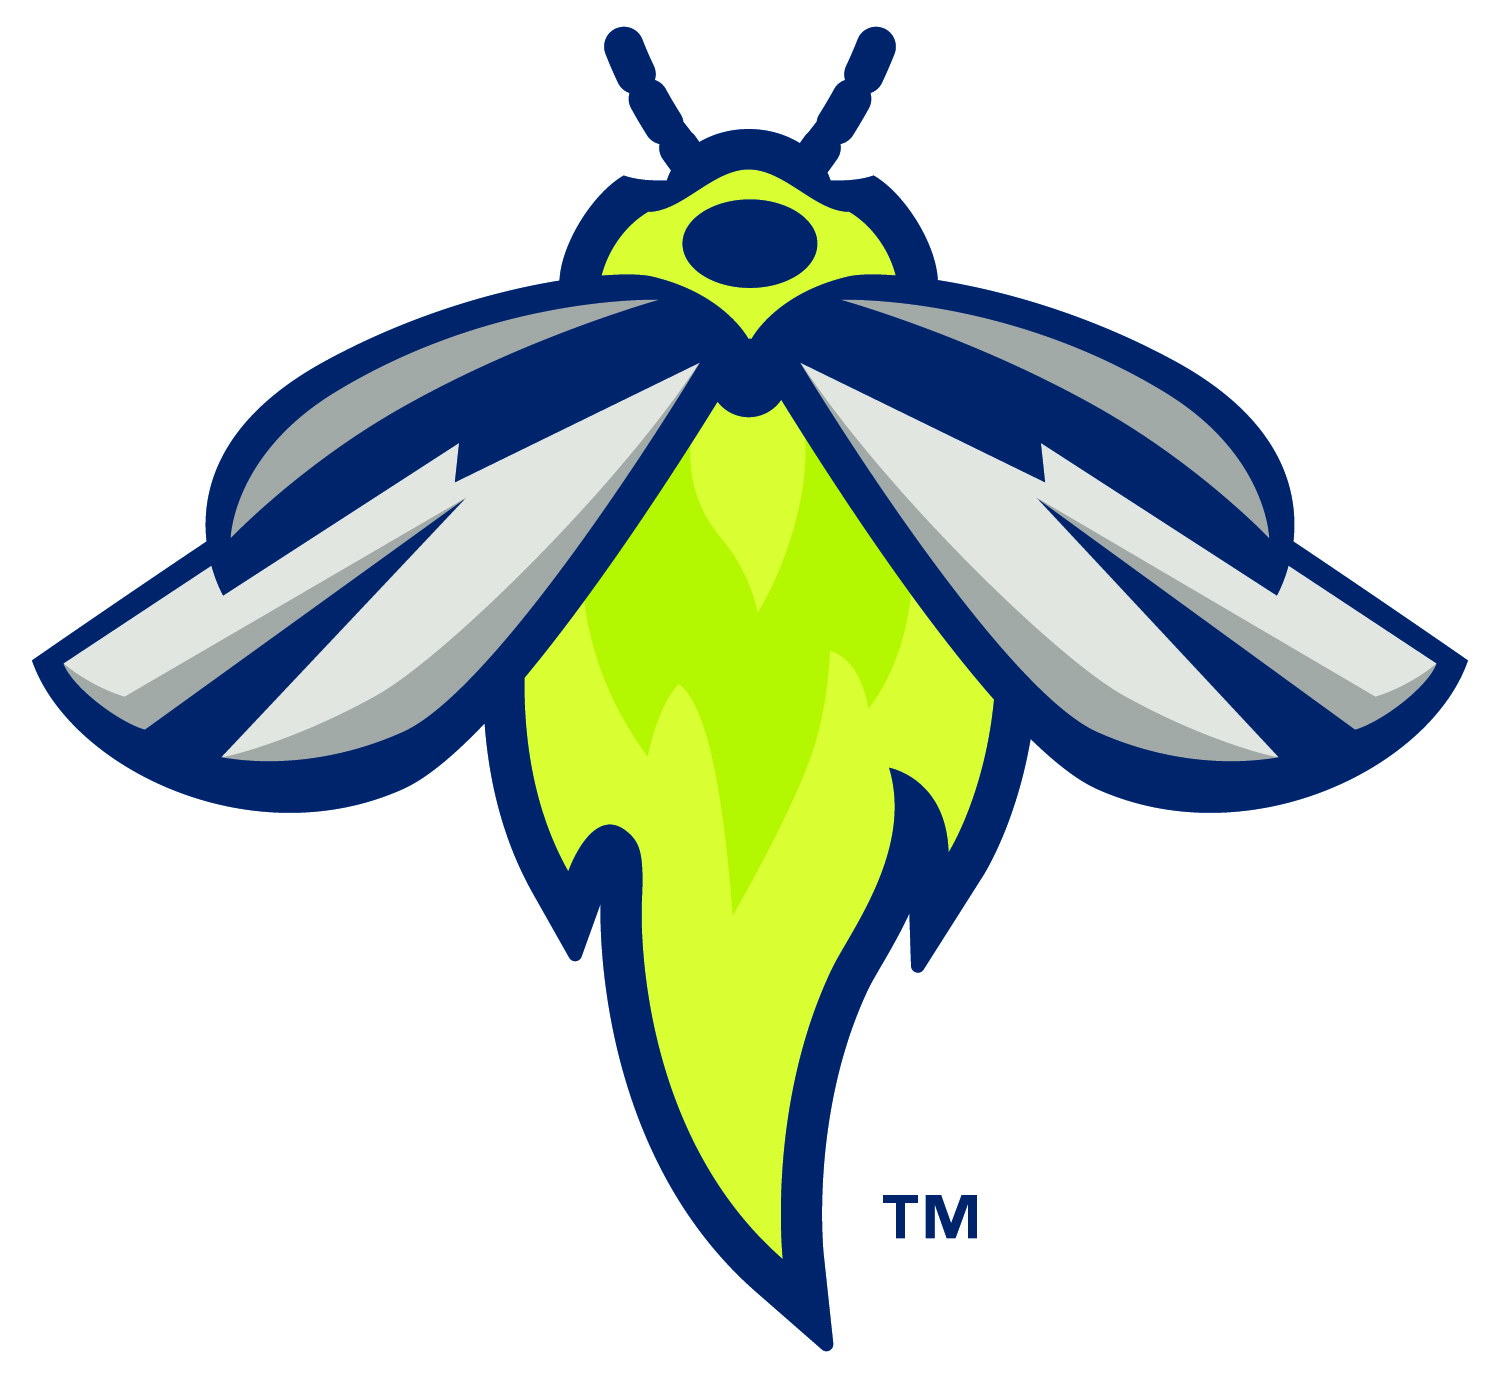 Fireflies logo